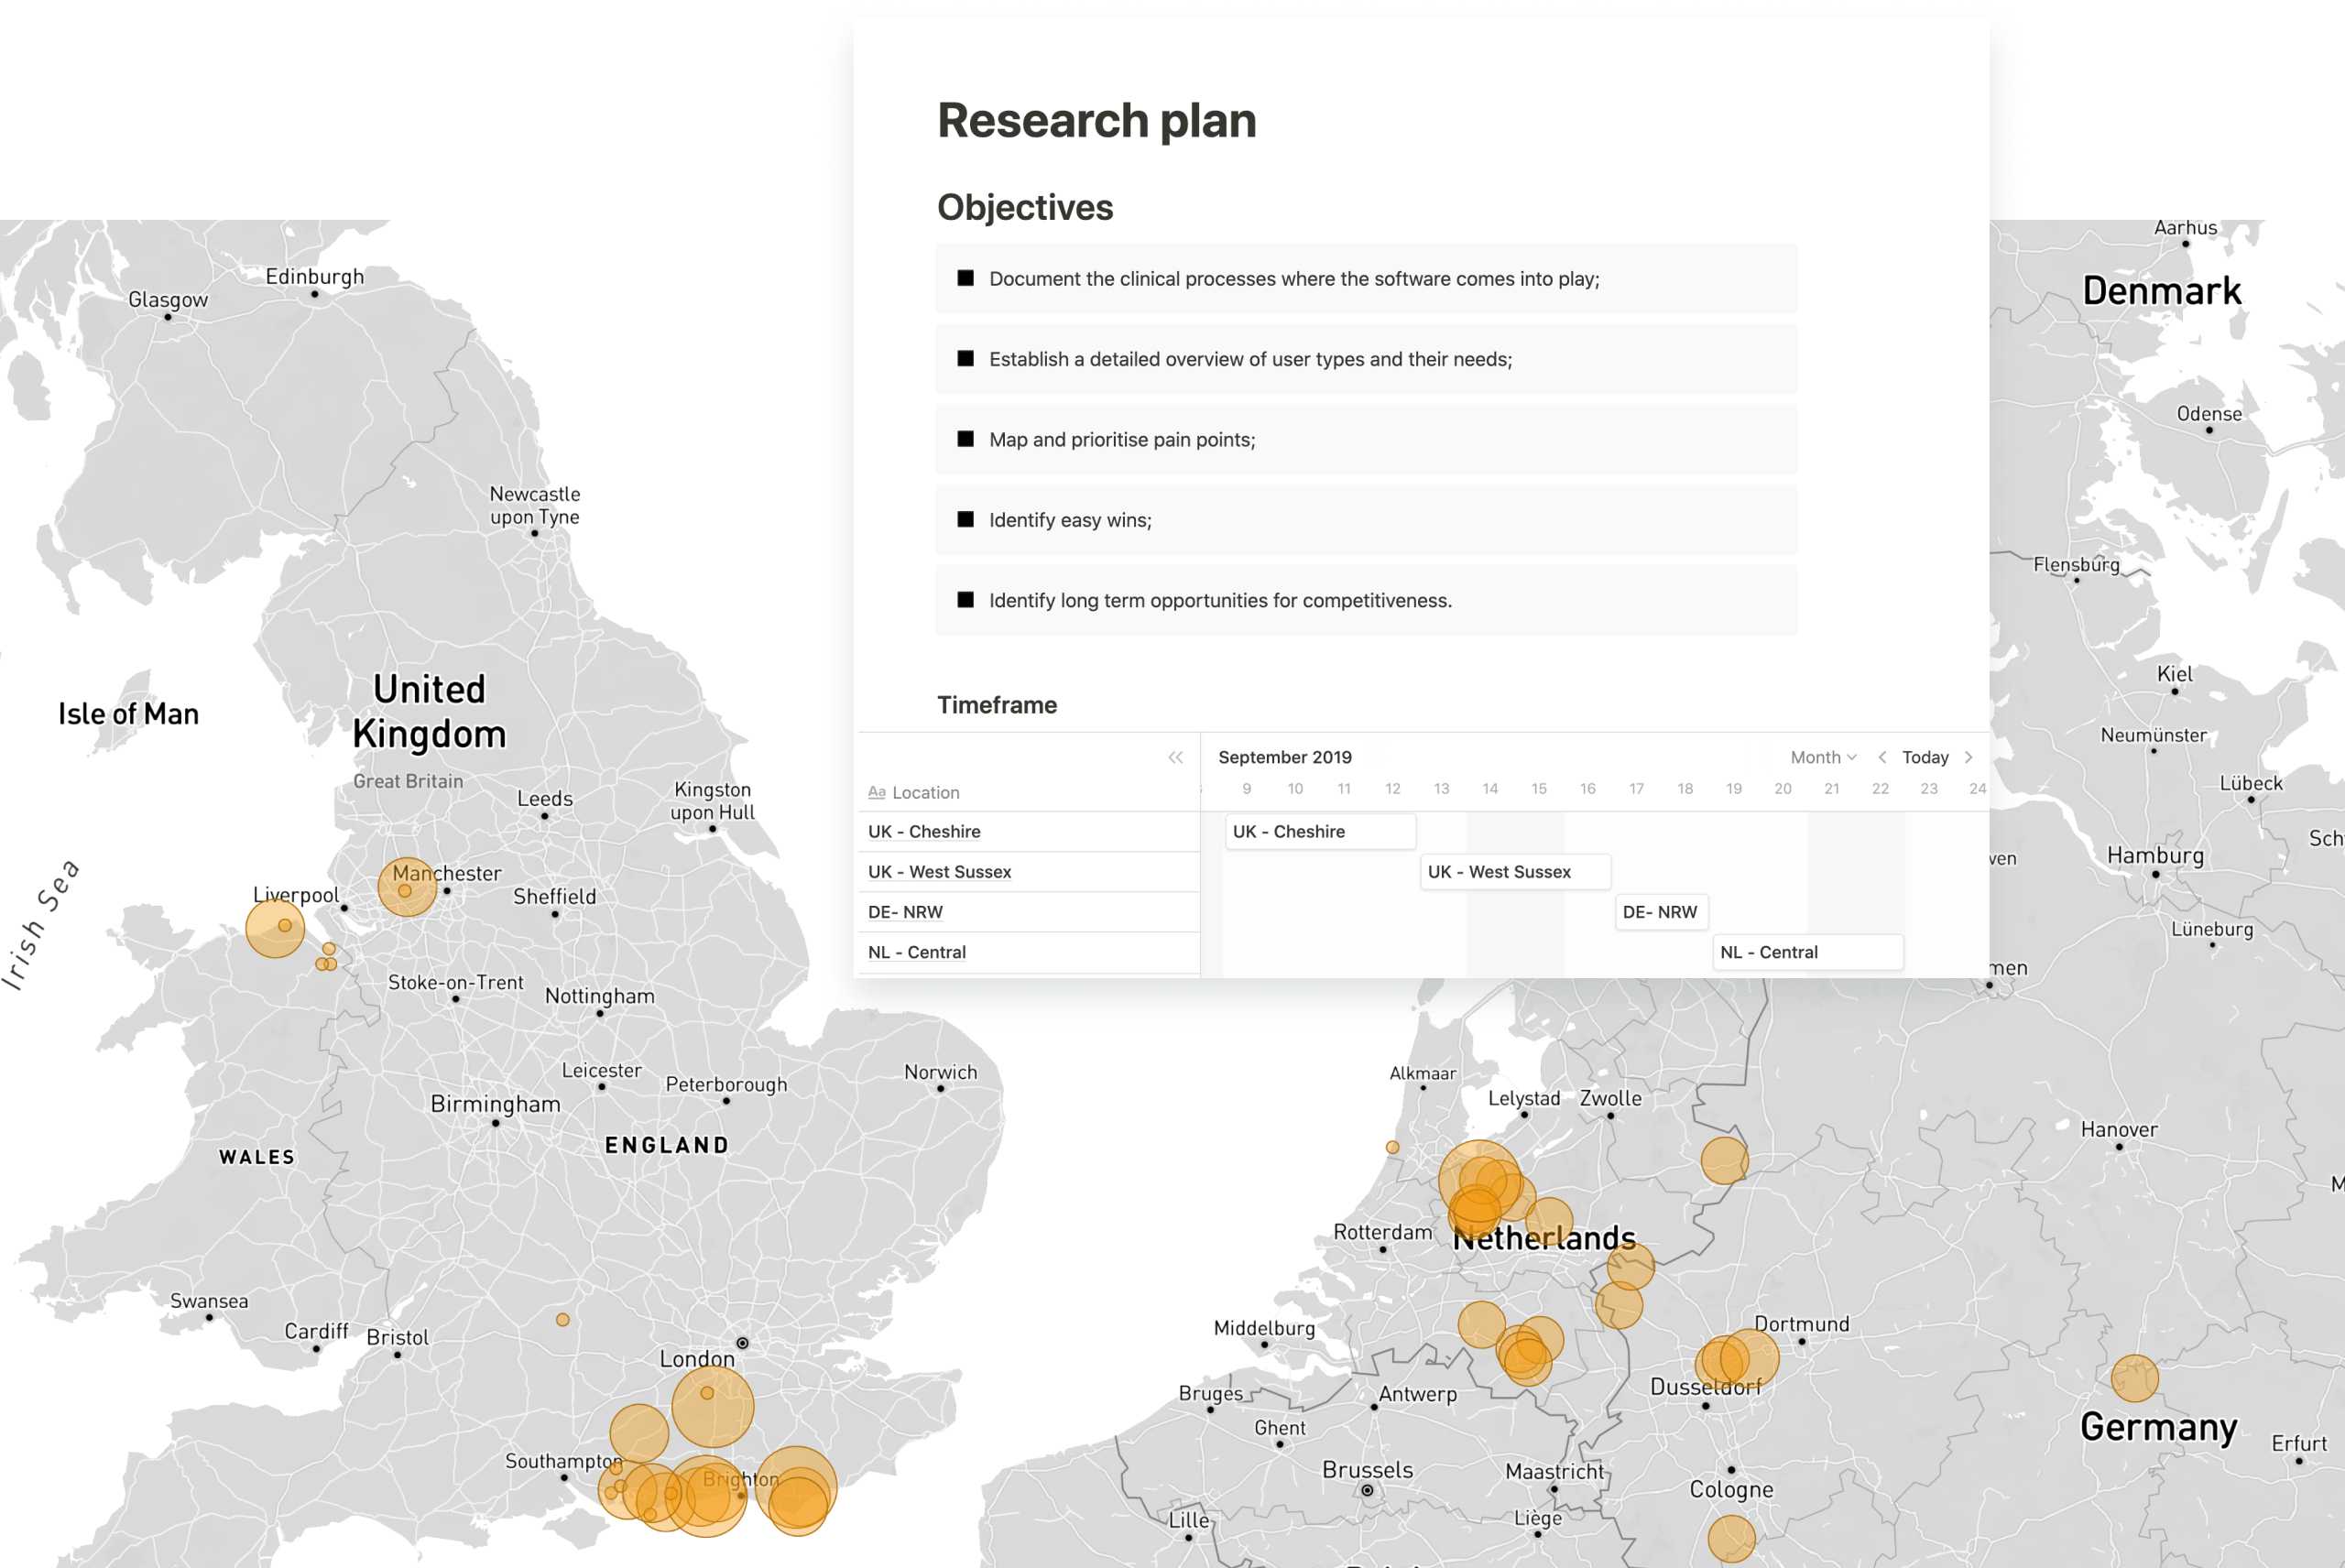 Carte de la France et de l'Allemagne avec les lieux de recherche des utilisateurs mis en évidence